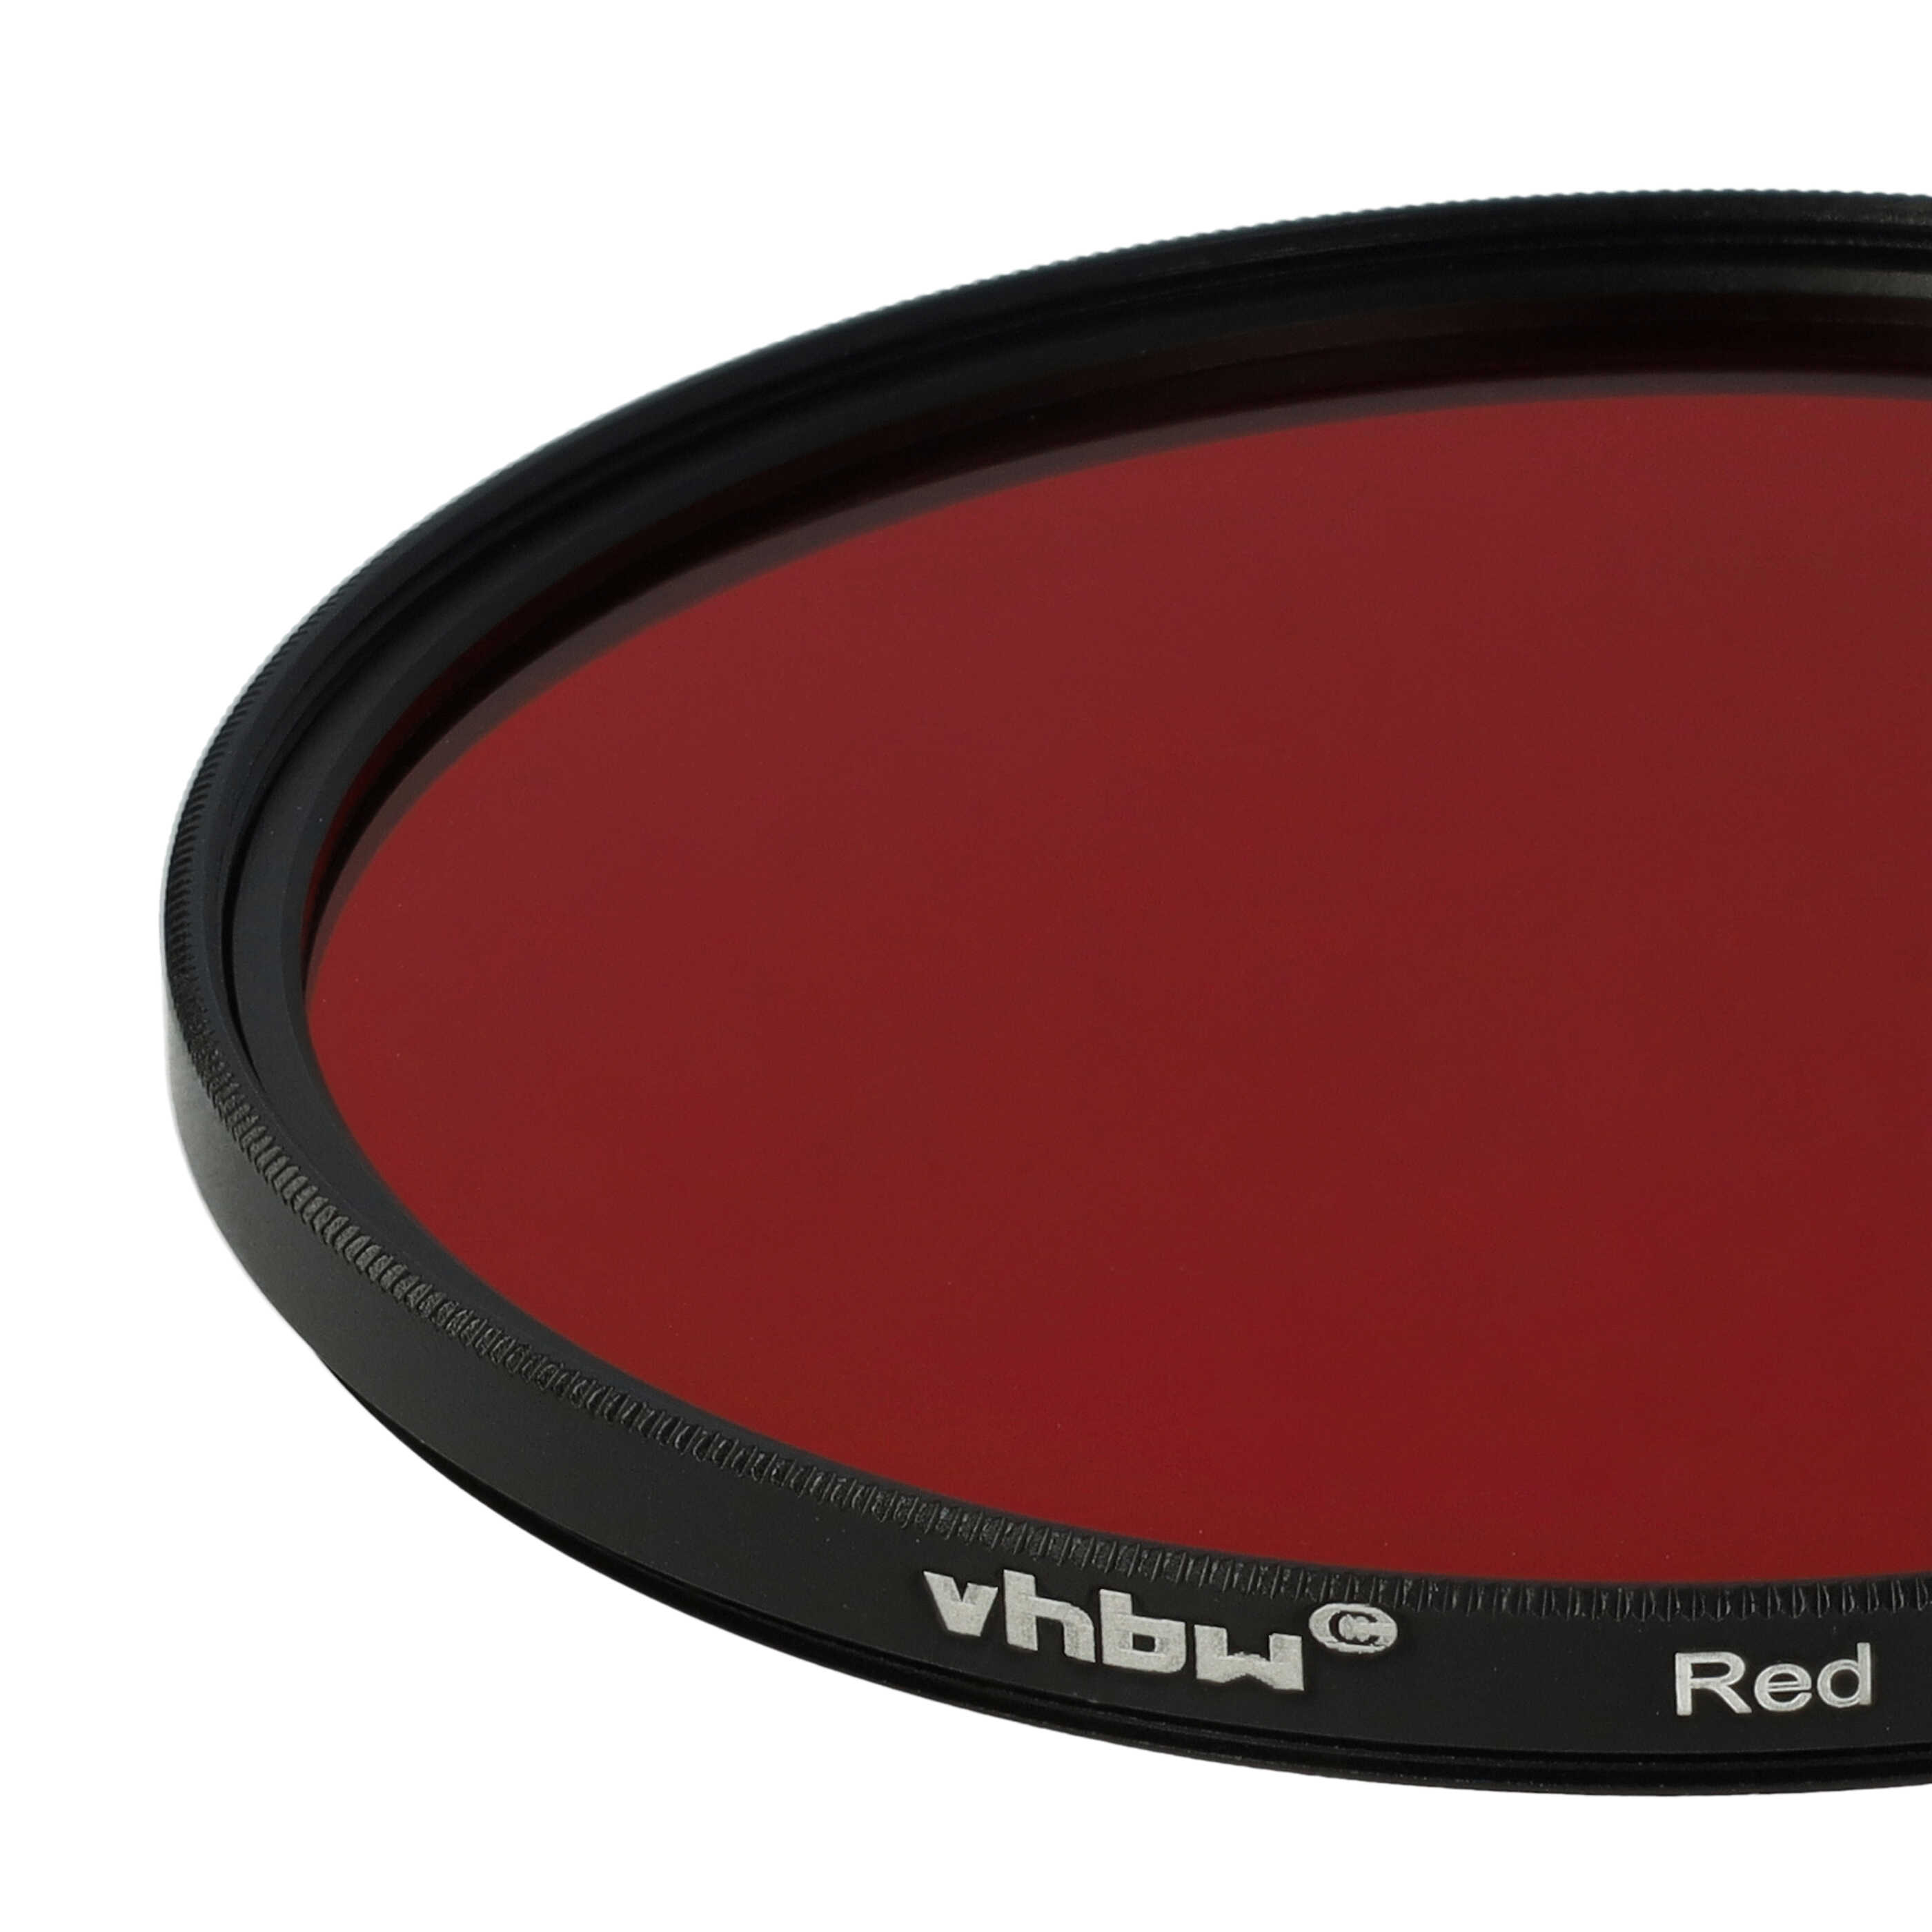 Filtro de color para objetivo de cámara con rosca de filtro de 77 mm - Filtro rojo